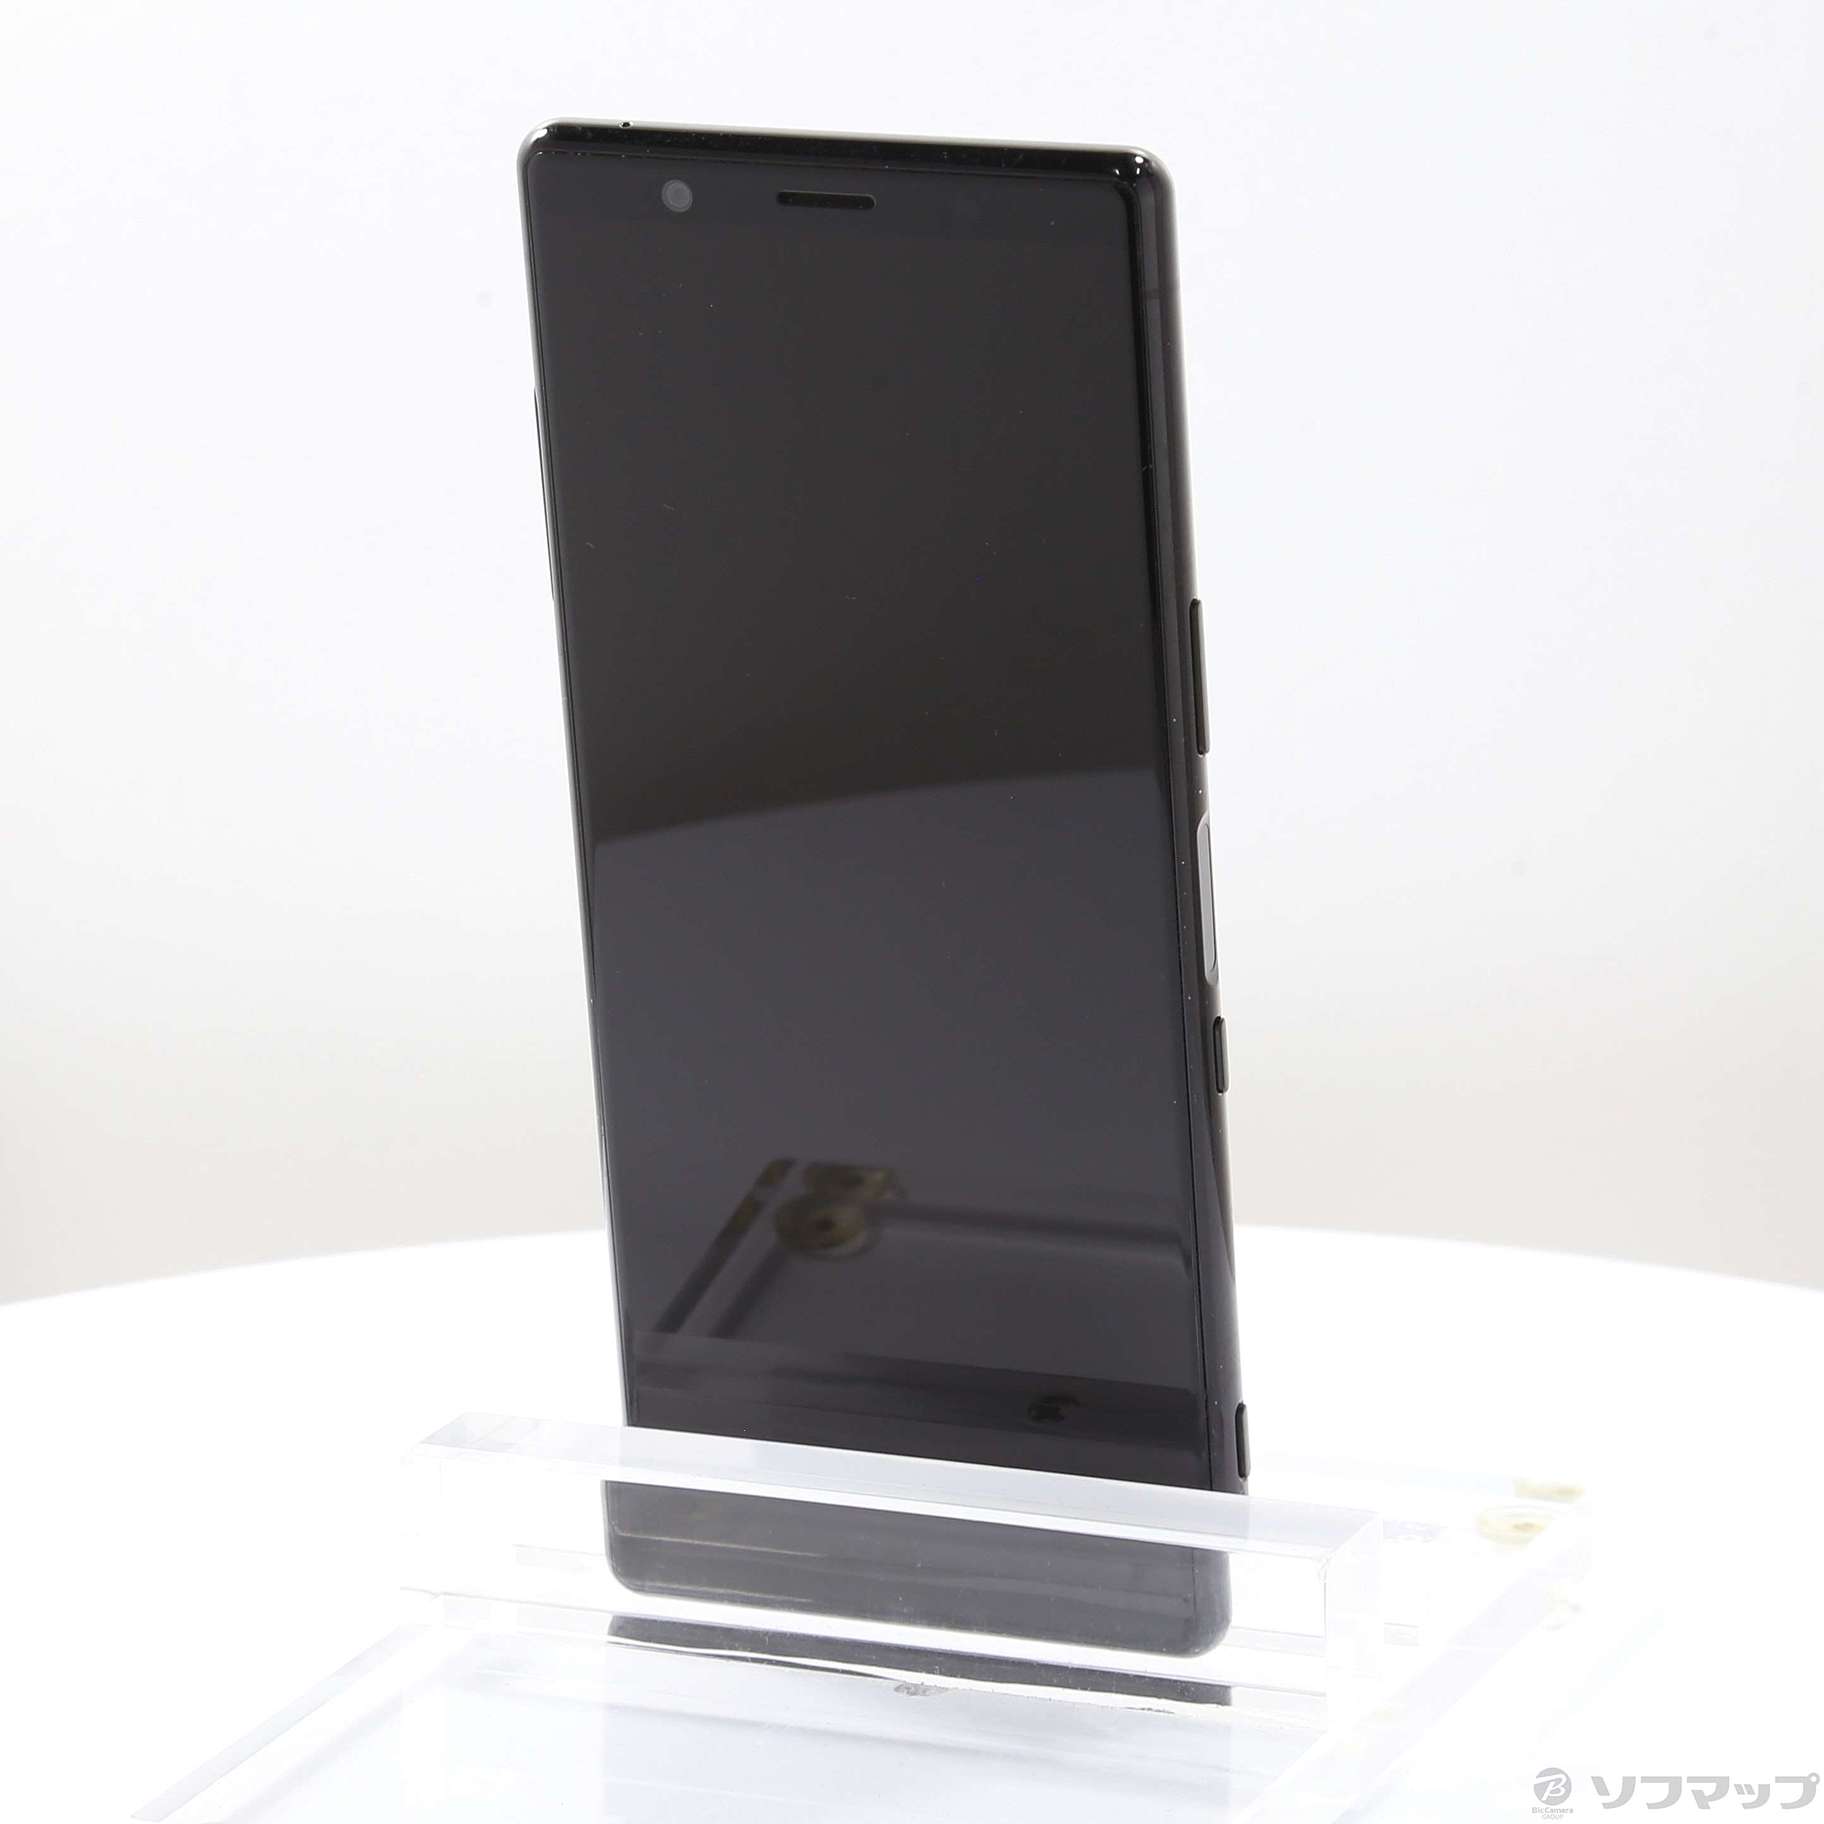 ソニー Xperia 5 SIMフリー J9260 グレー 128GB - スマートフォン本体